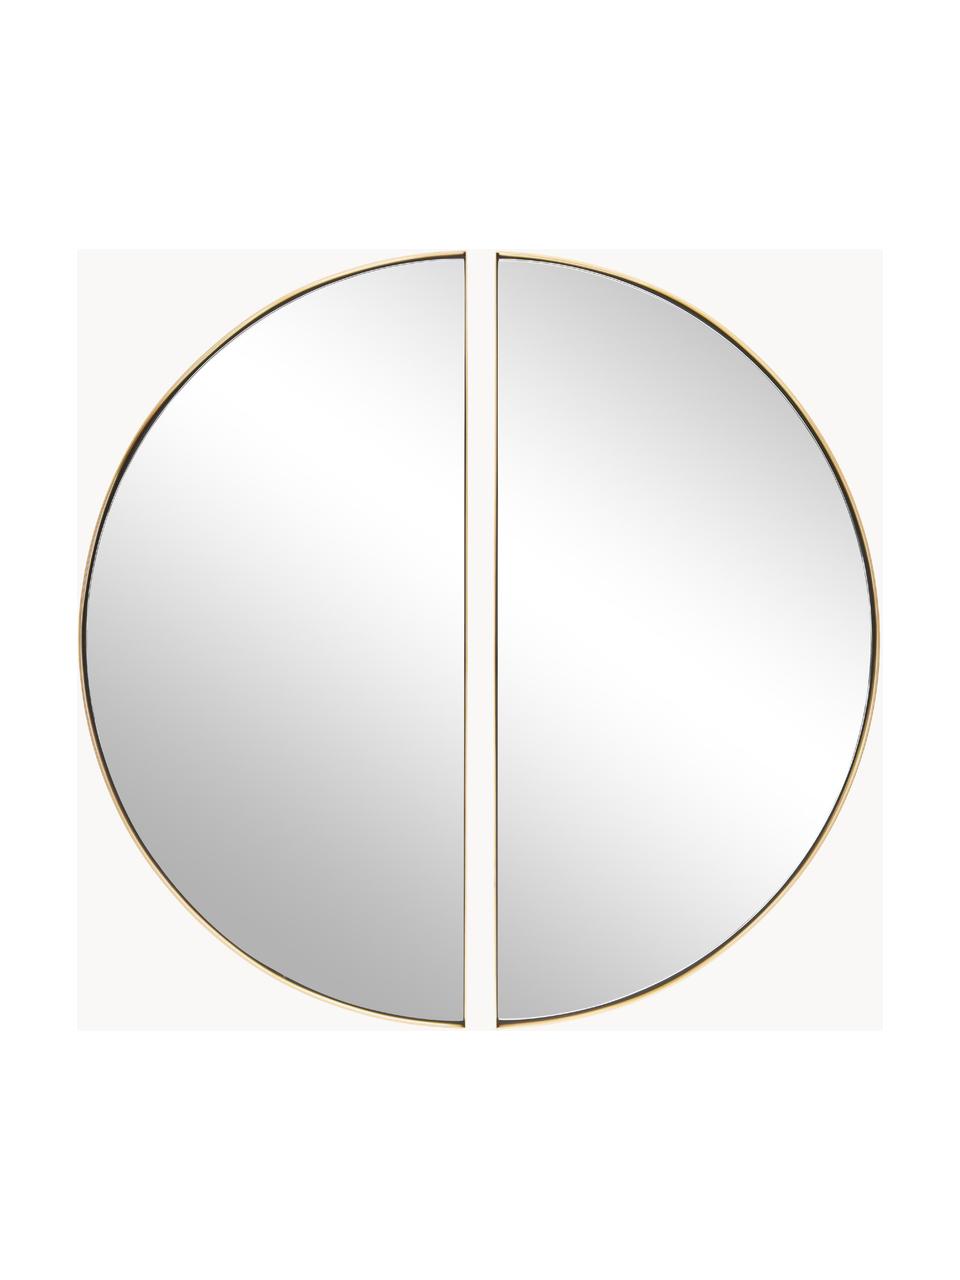 Set de espejo de pared Selena, 2 uds., Espejo: cristal, Parte trasera: tablero de fibras de dens, Dorado, Ø 100 cm